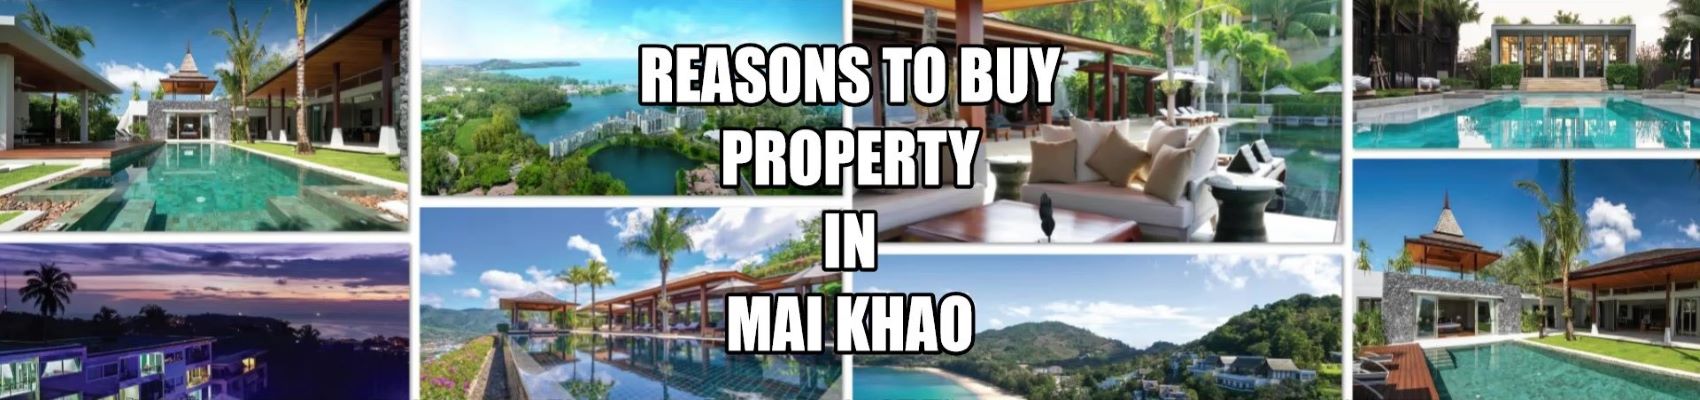 Tipps zum Kauf von Immobilien in Mai Khao